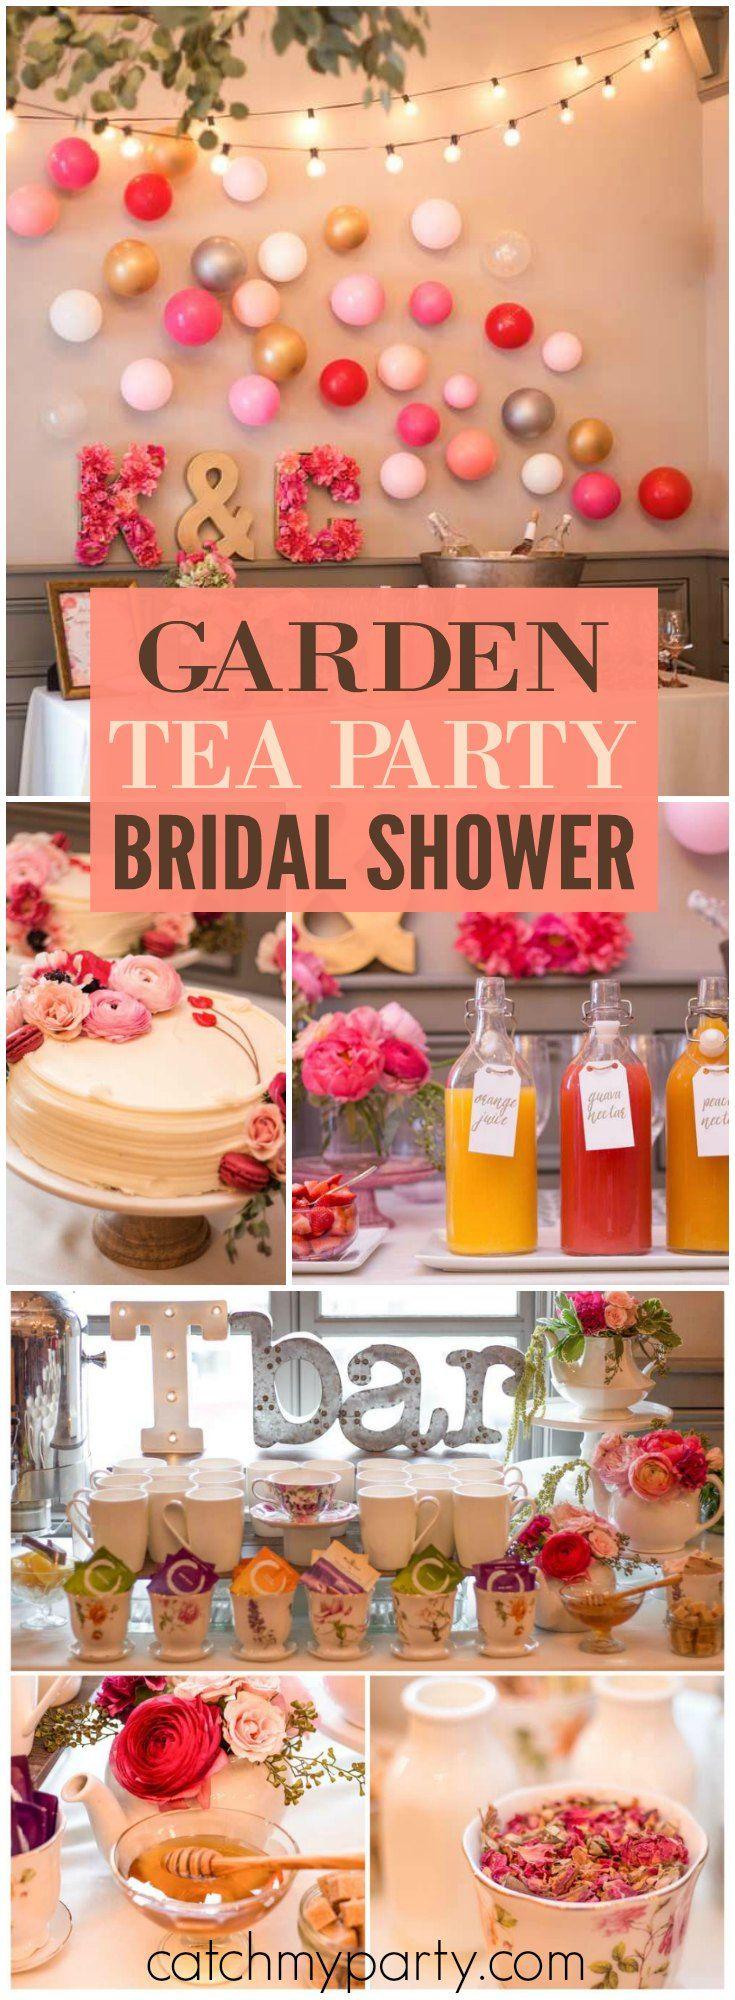 Wedding - Garden Tea Party / Bridal/Wedding Shower "Kimberly' S Garden Tea Party"